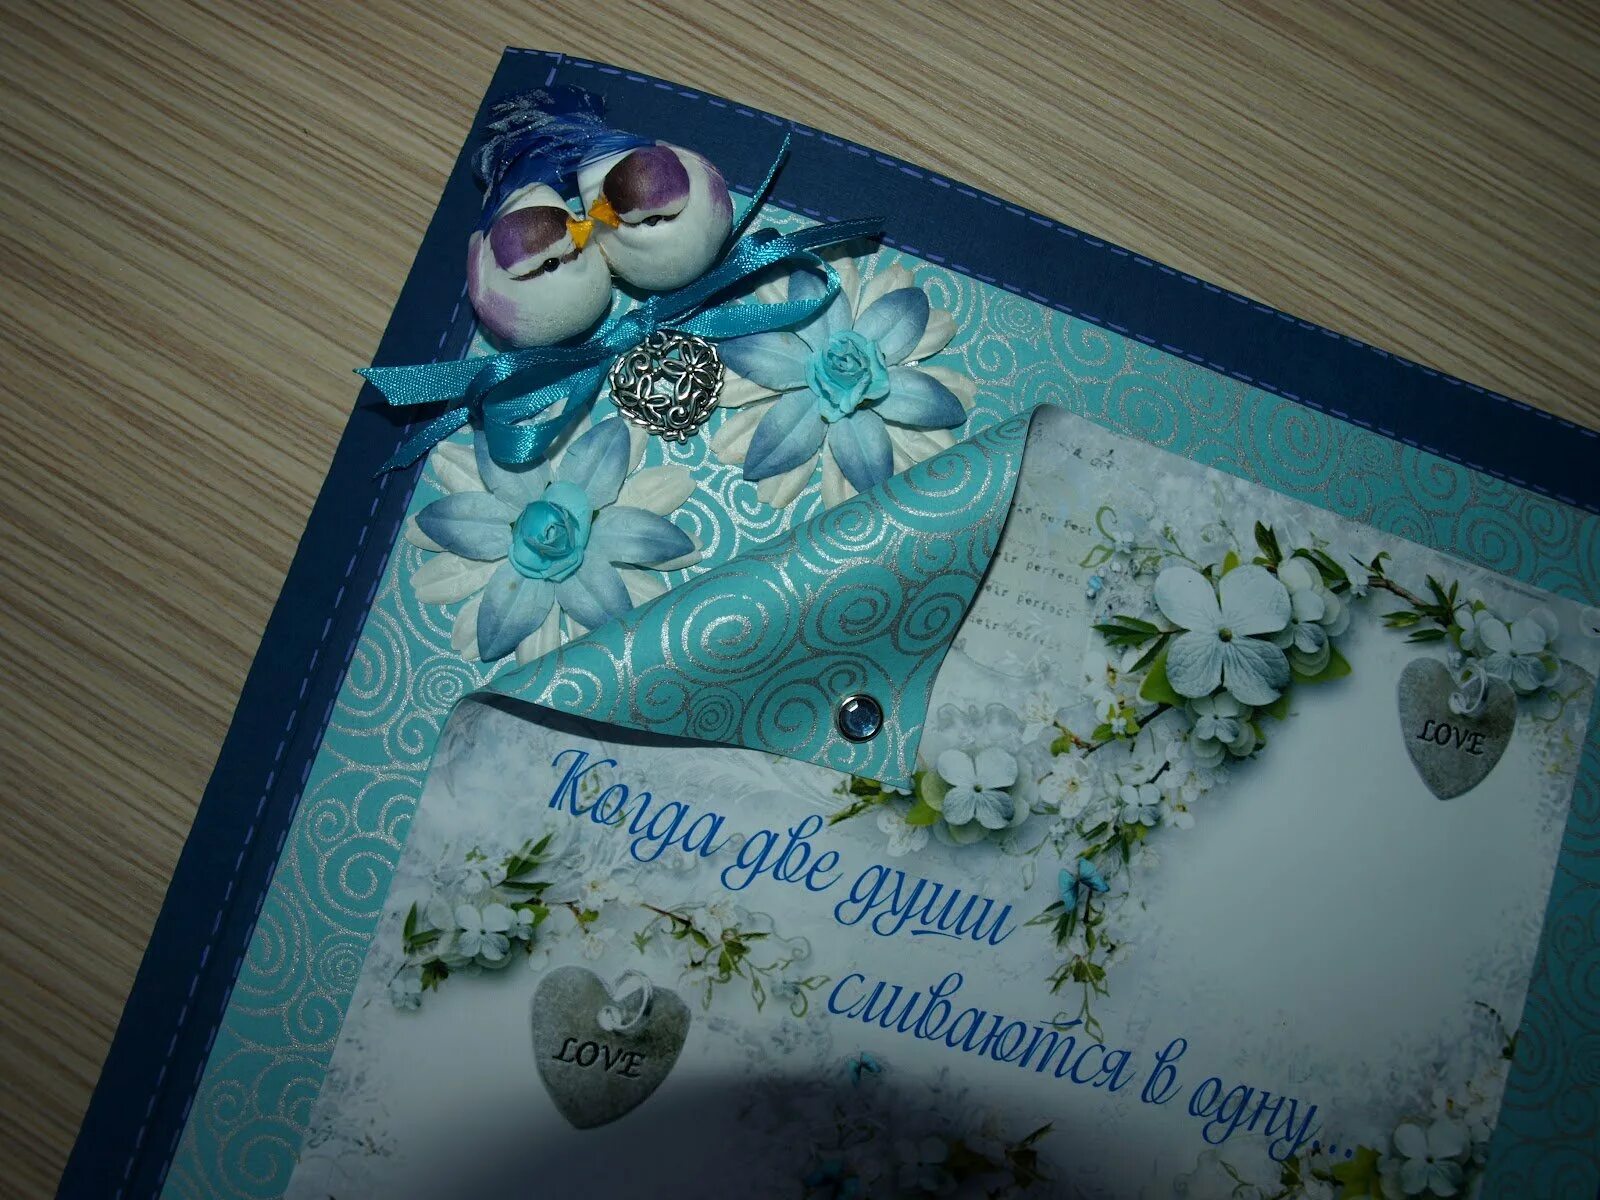 Сапфировая свадьба. Сапфировая свадьба поздравления. Сапфировая свадьба открытки. Красивые открытки с сапфировой свадьбой.